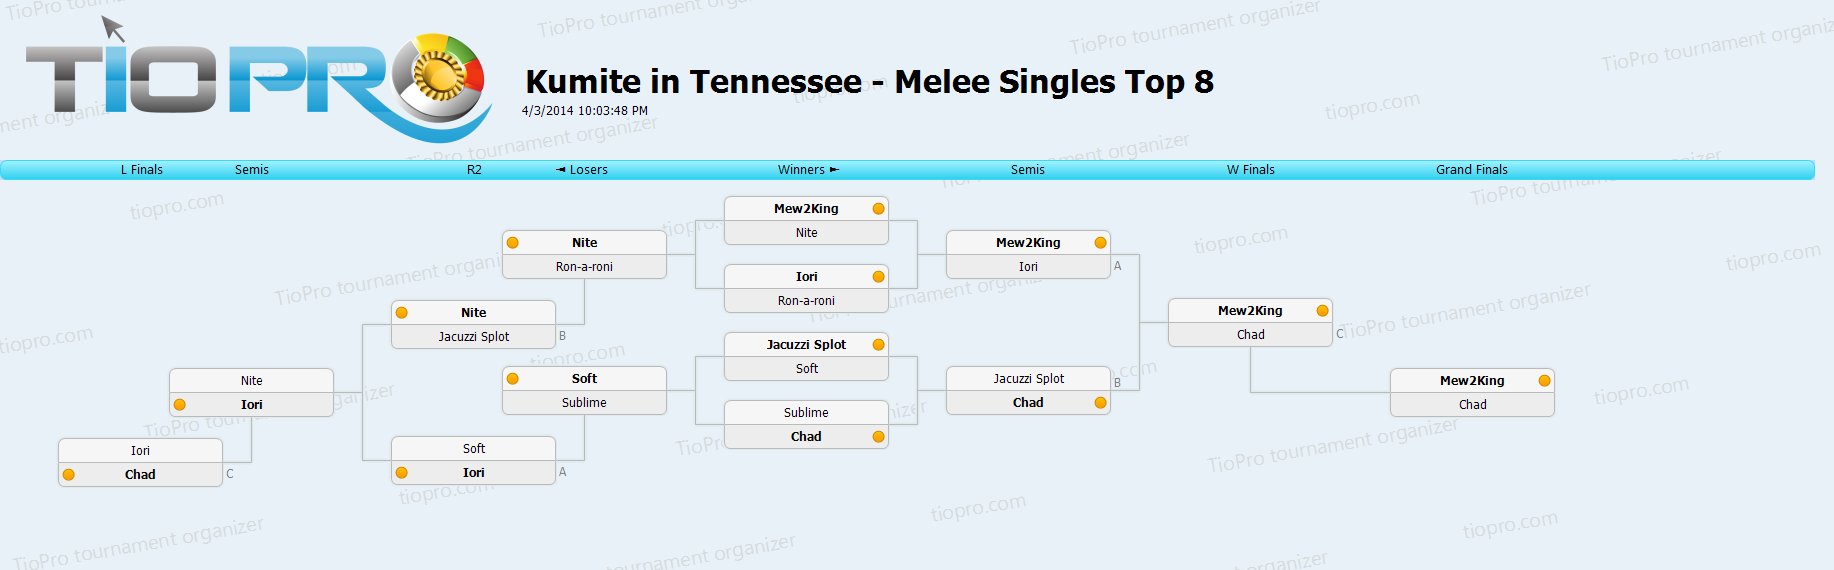 Melee Singles Top 8